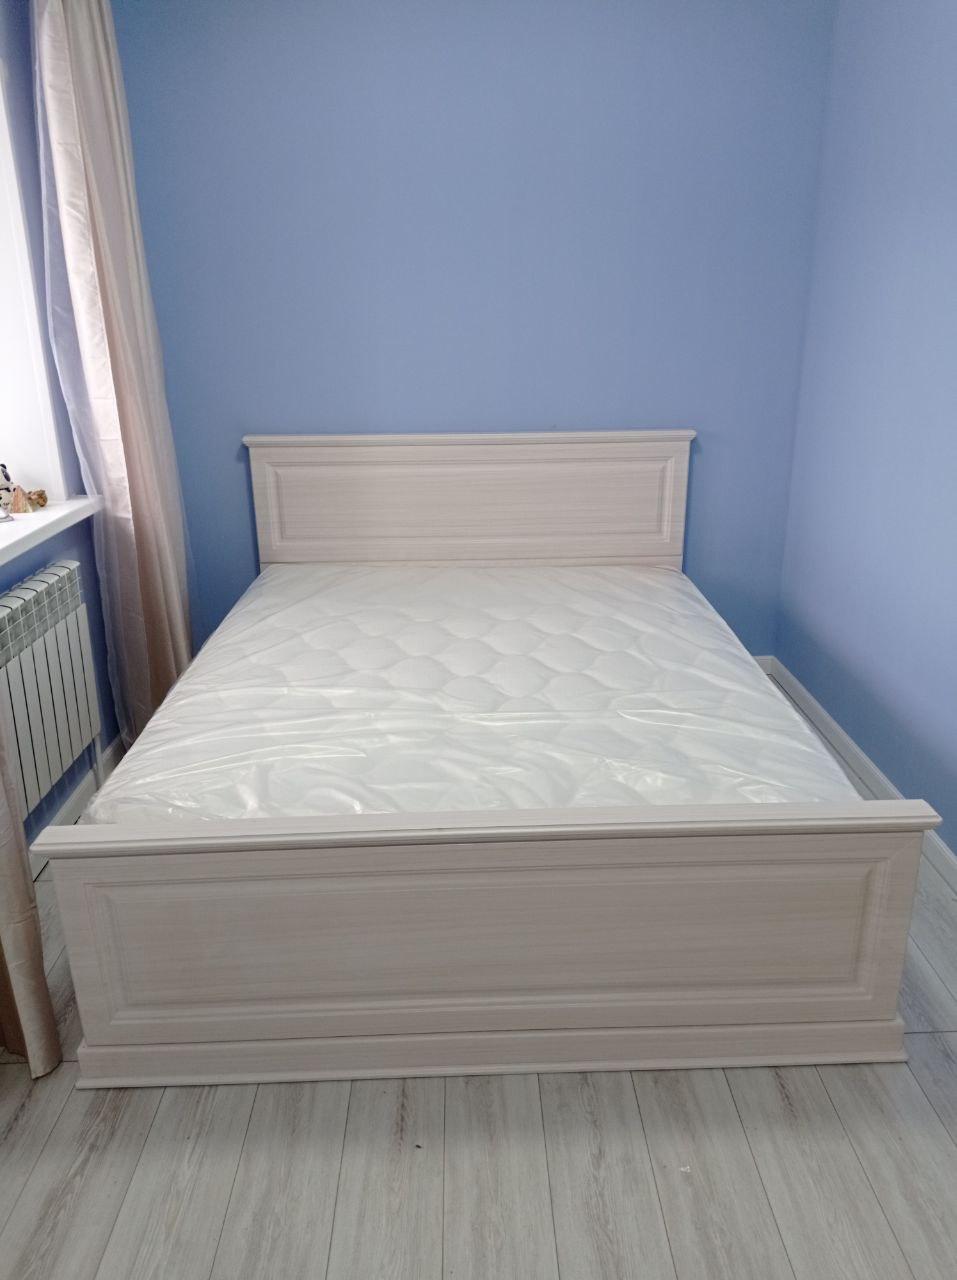 Двуспальная кровать "Прованс 2" 180 х 200 с подъемным мех-ом цвет дуб коньяк изножье высокое